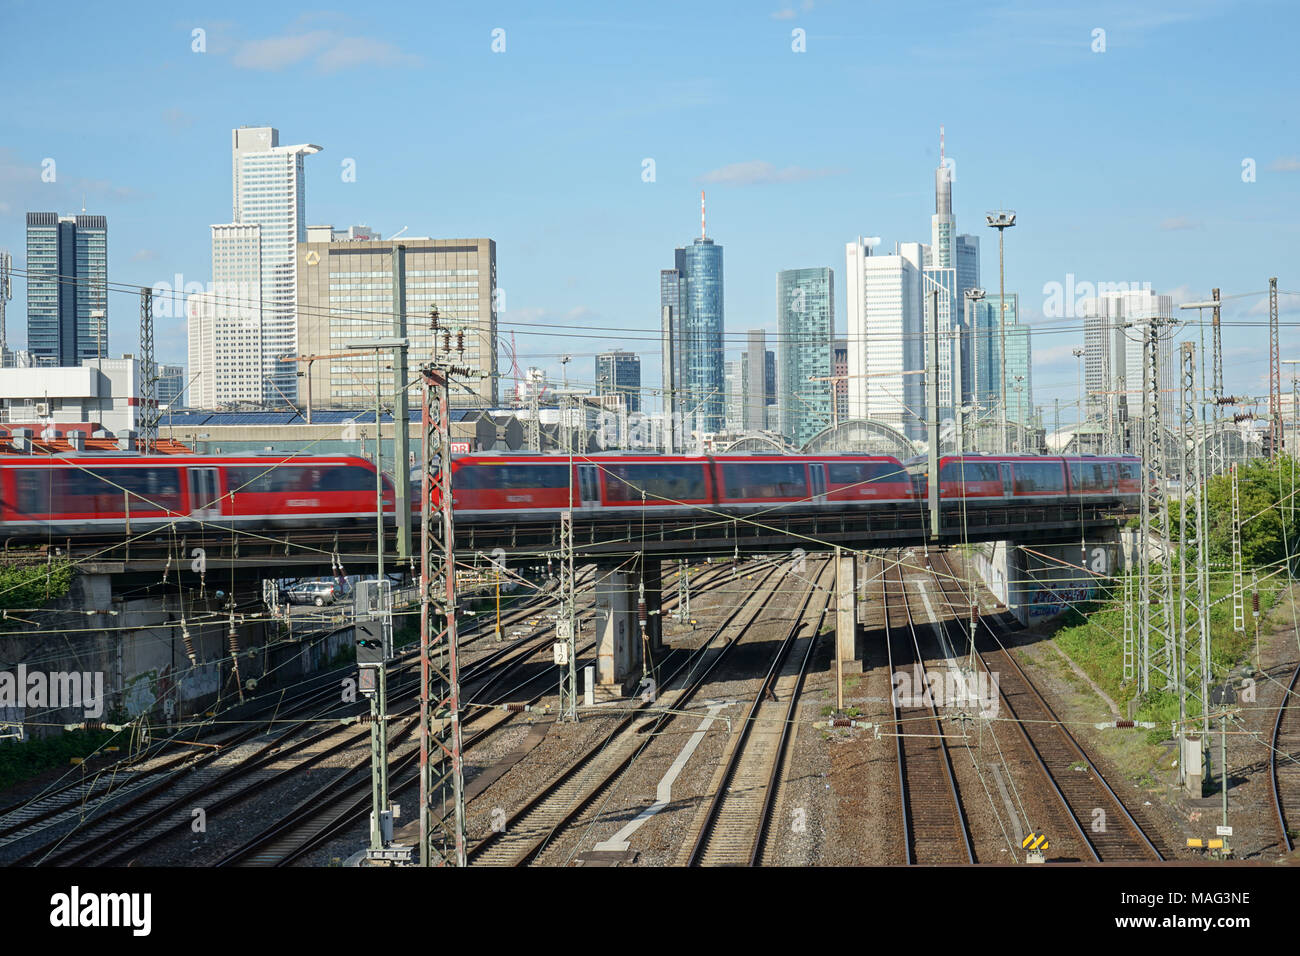 Regionalzug fährt über eine Brücke, Gleise zum Frankfurter Hauptbahnhof, Skyline, Frankfurt, Deutschland, Europa Banque D'Images